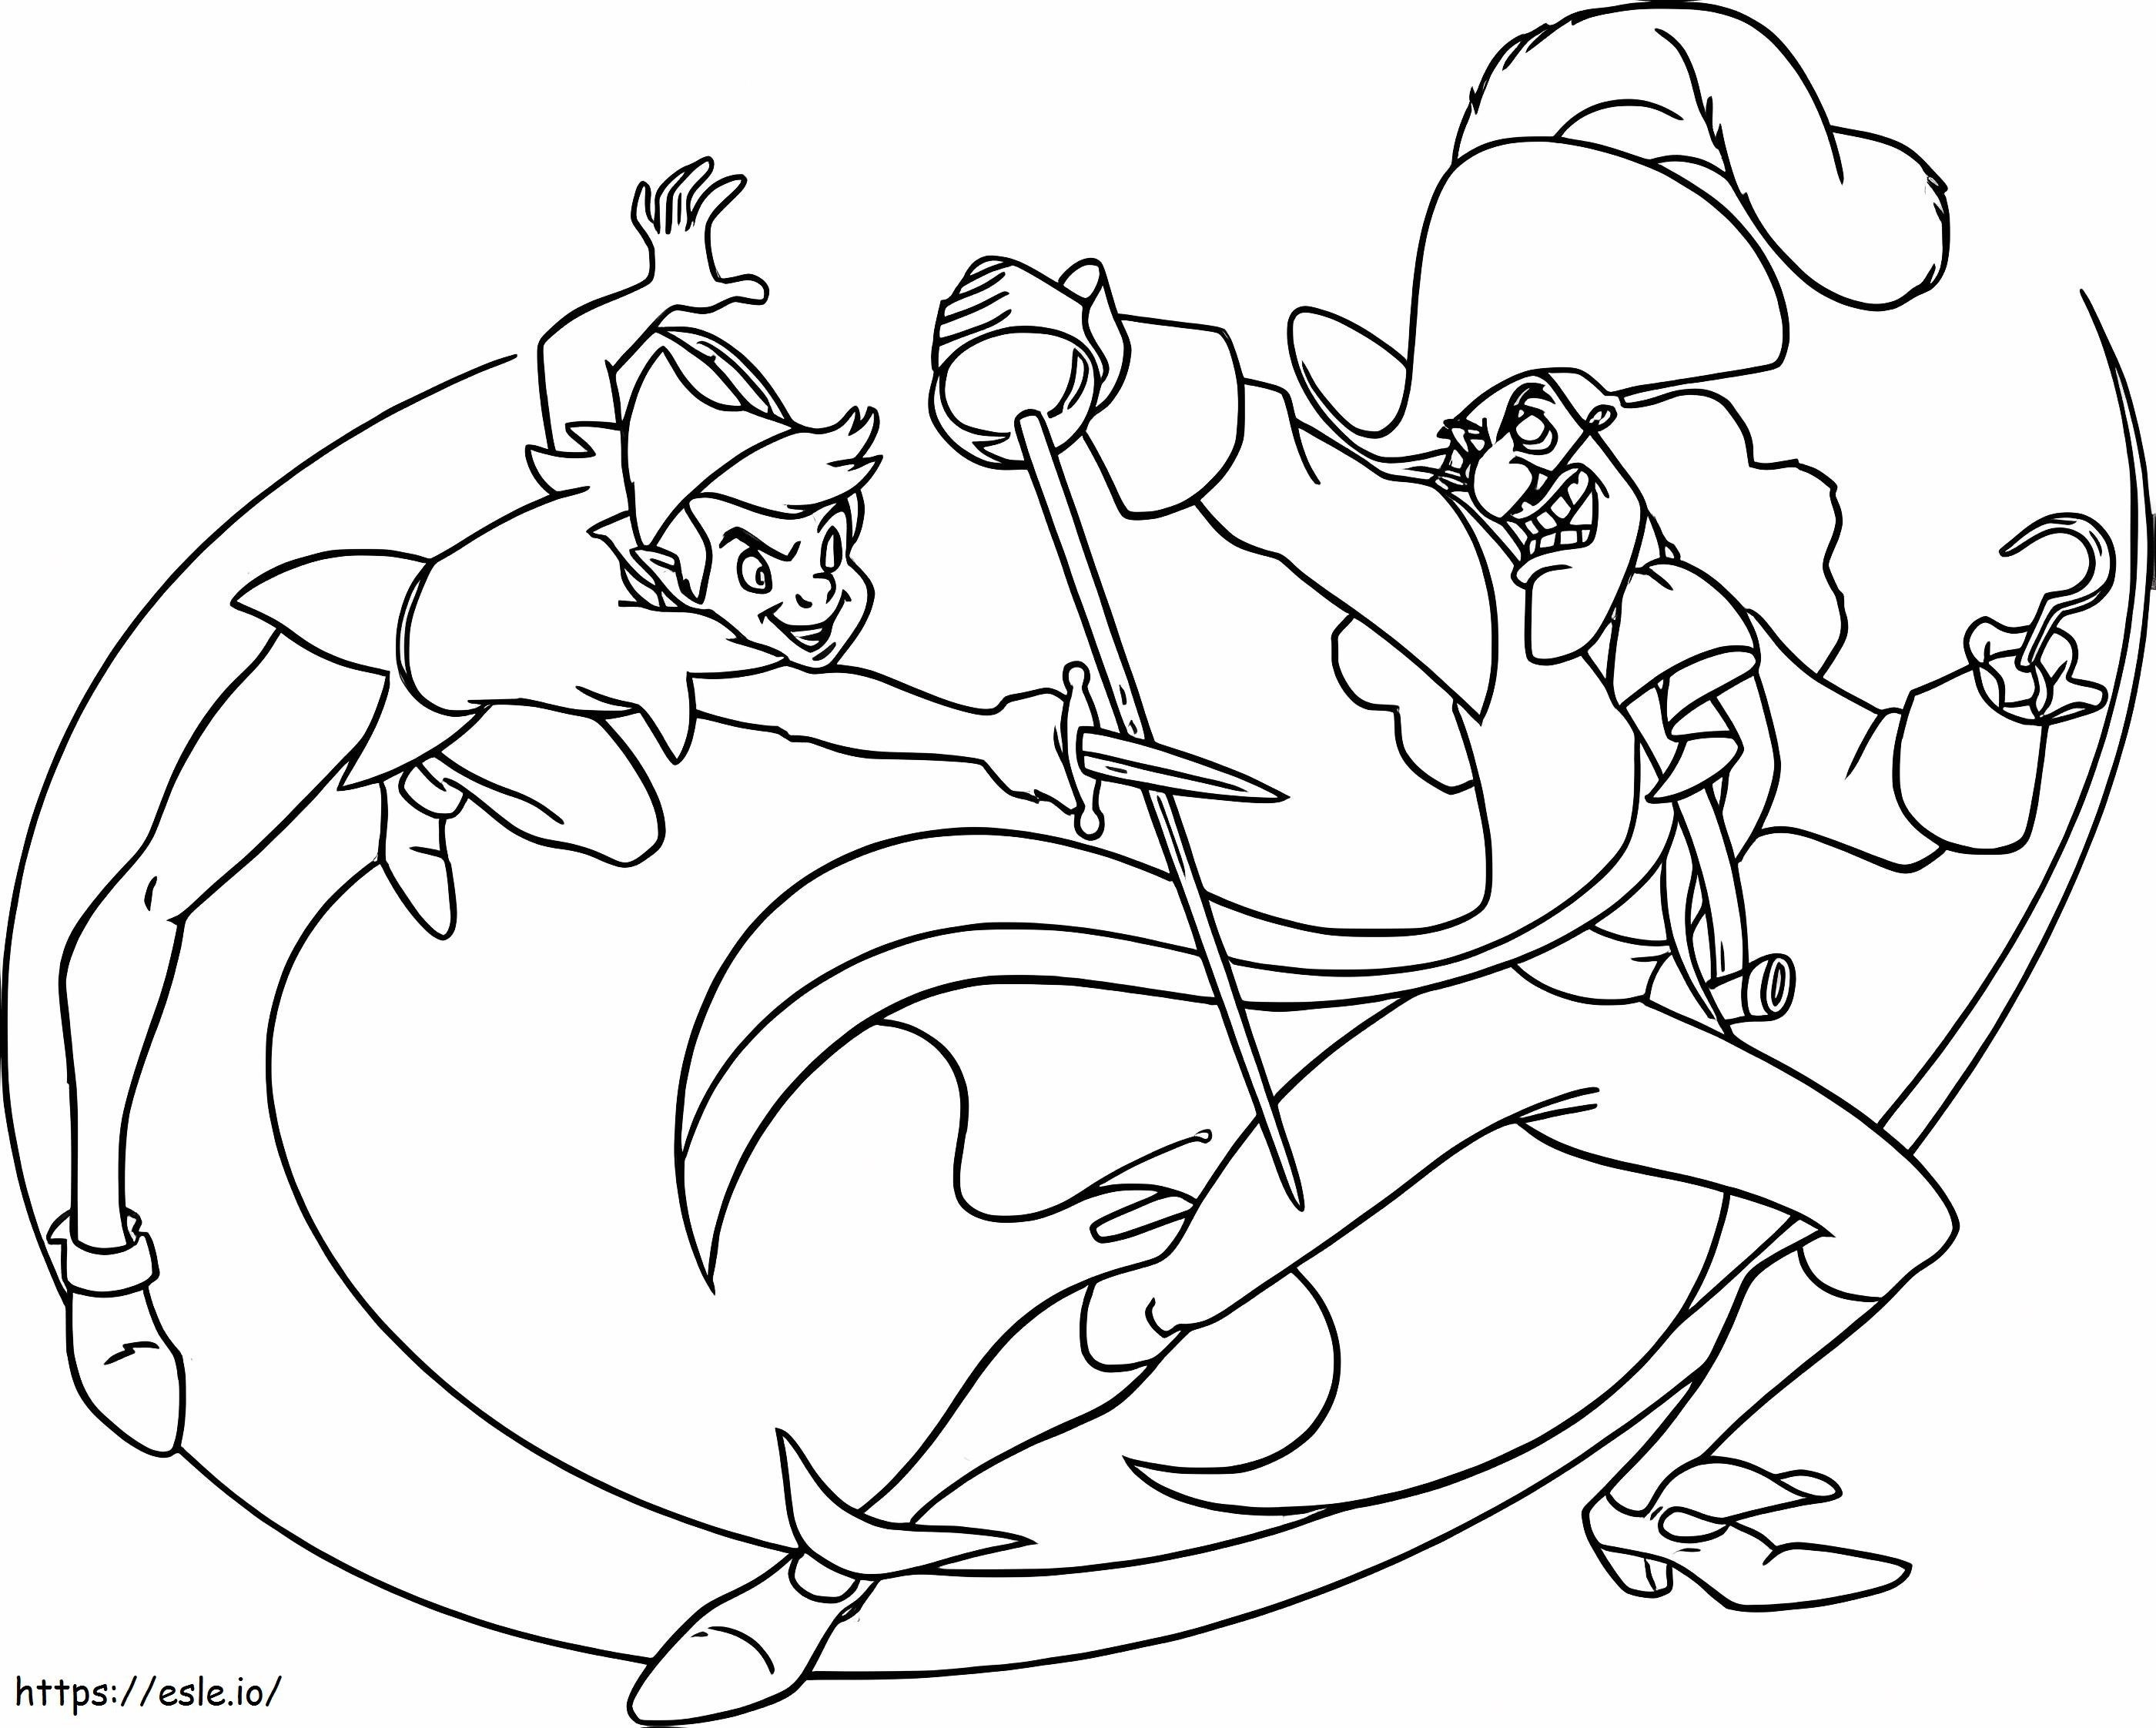 Coloriage Peter Pan et le capitaine Hook se battent à imprimer dessin